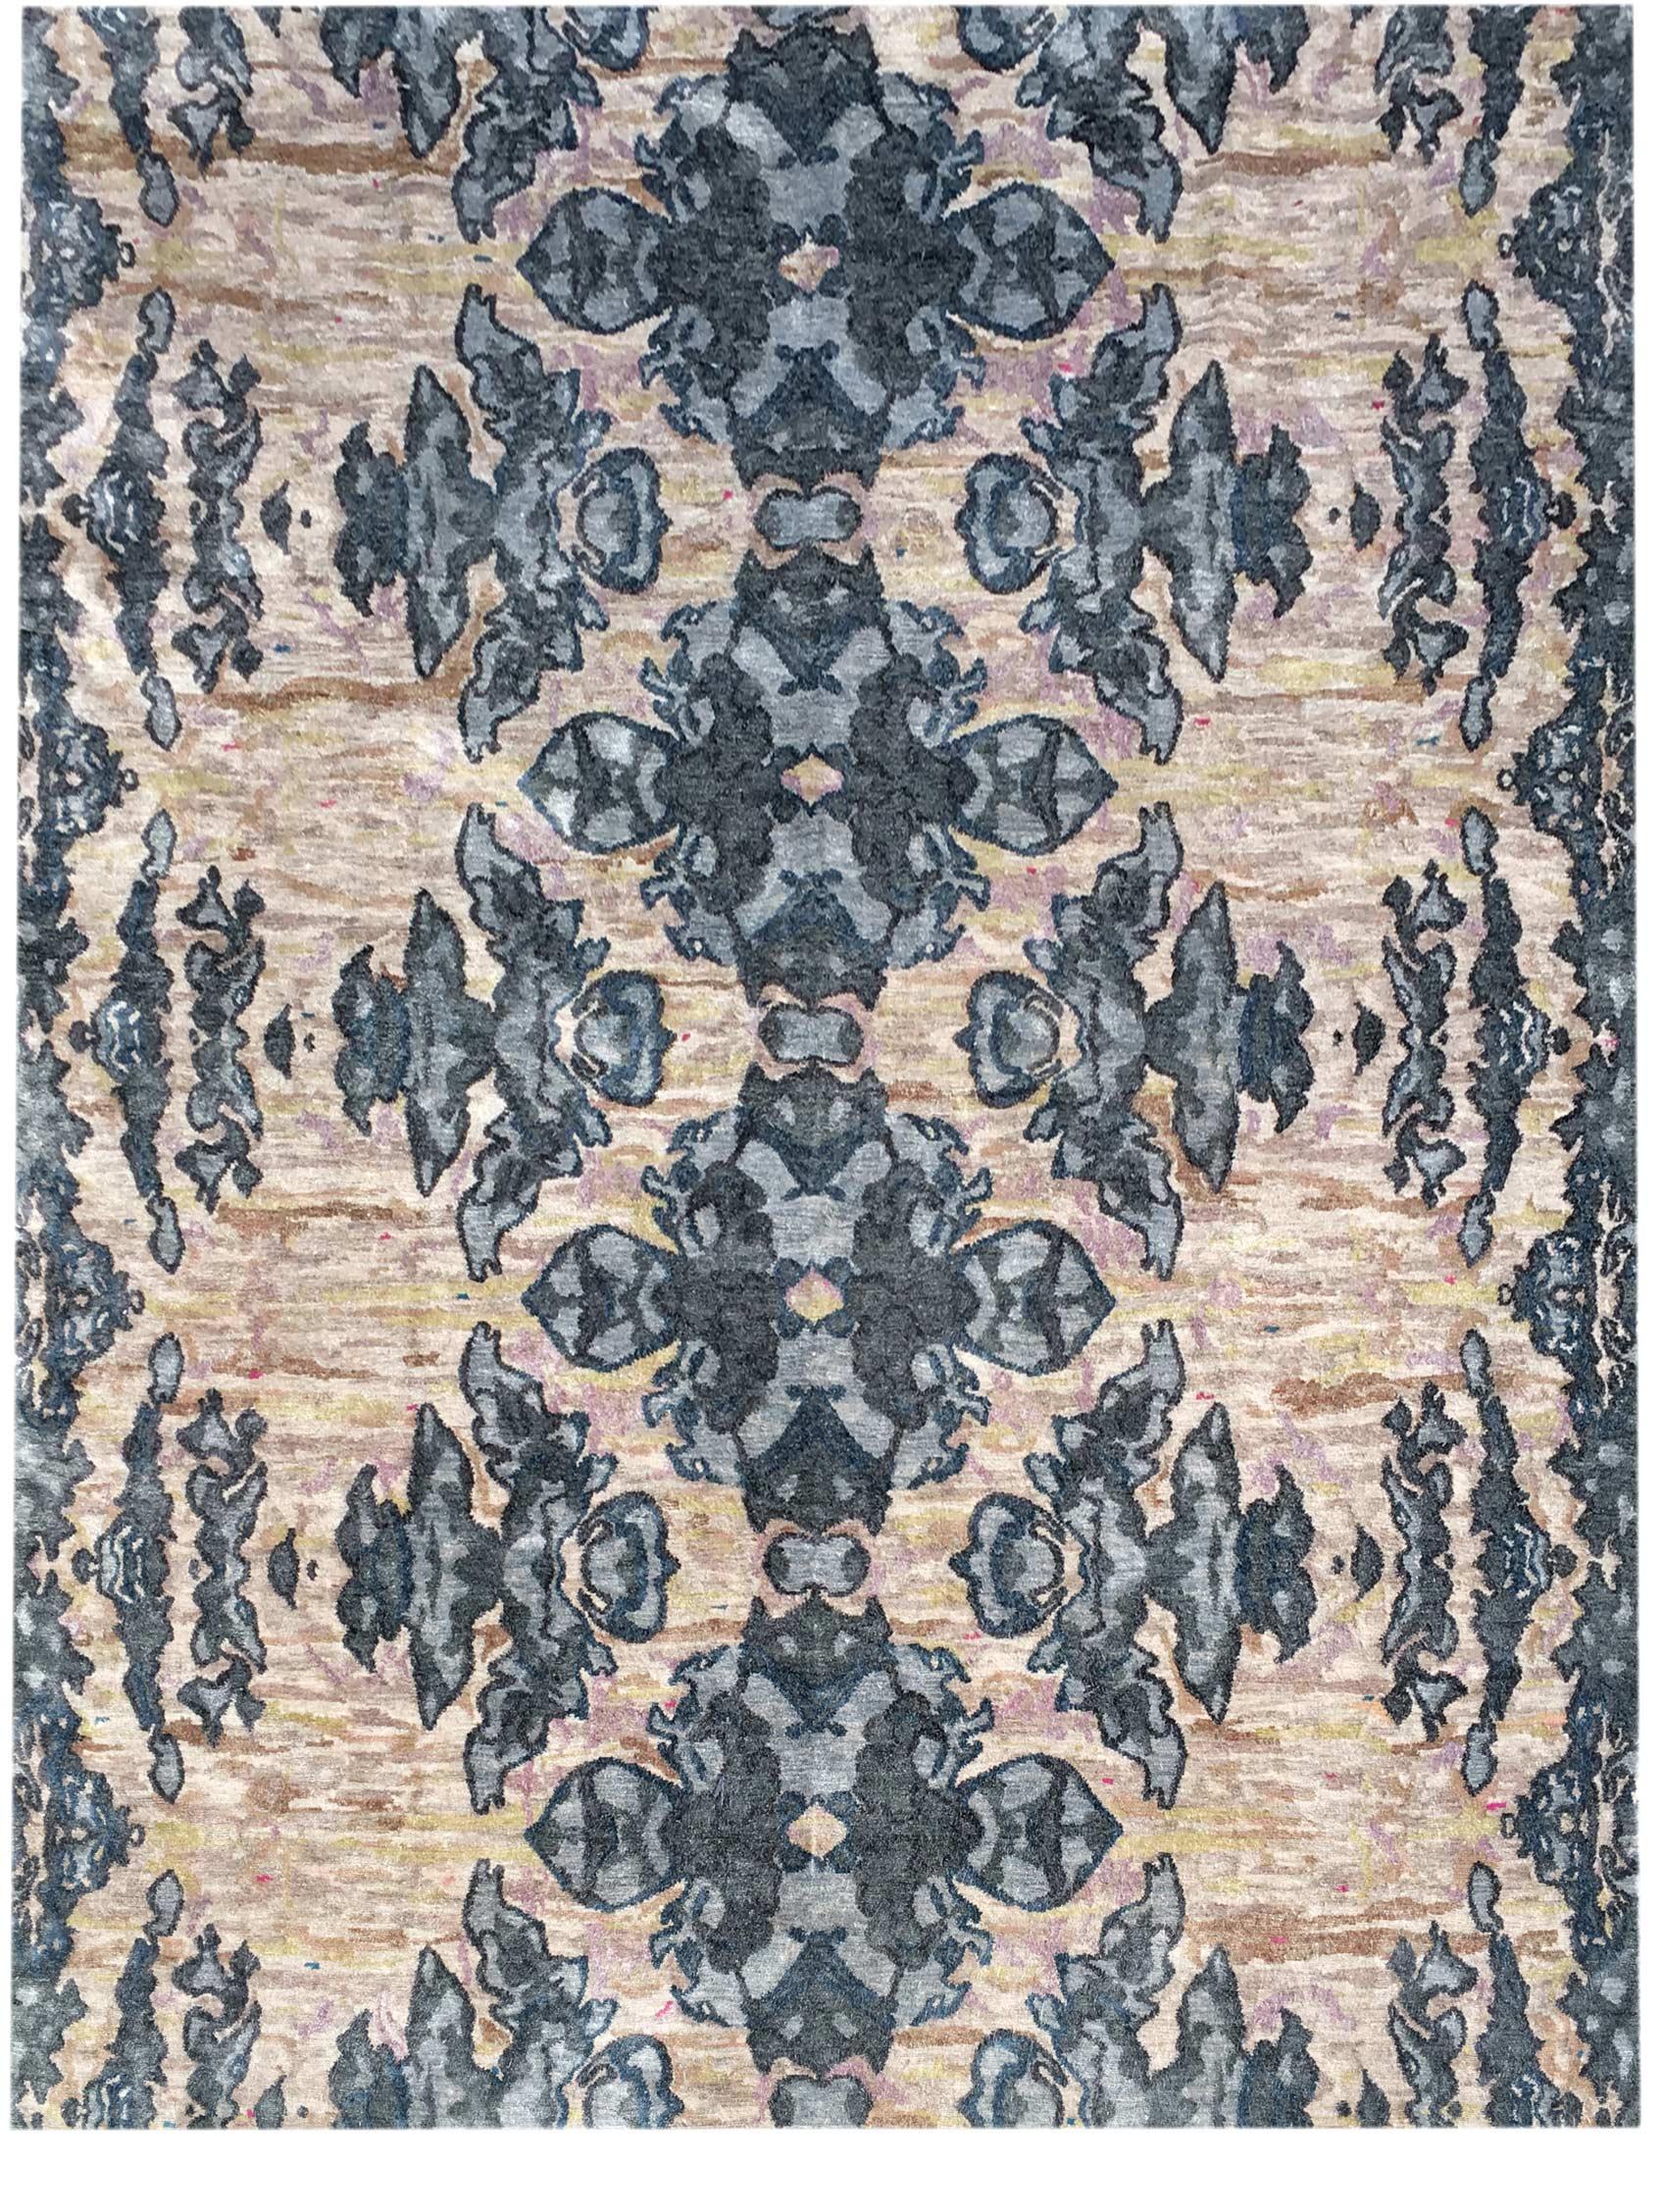 Olivfarbener handgeknüpfter Teppich von Eskayel „The Dance“
Abmessungen: D 9' x H 12'
Pfahlhöhe: 6 mm
MATERIALIEN: 70% Matkaseide, 30% Bambusseide.

Die handgeknüpften Teppiche von Eskayel werden auf Bestellung gewebt und können in verschiedenen